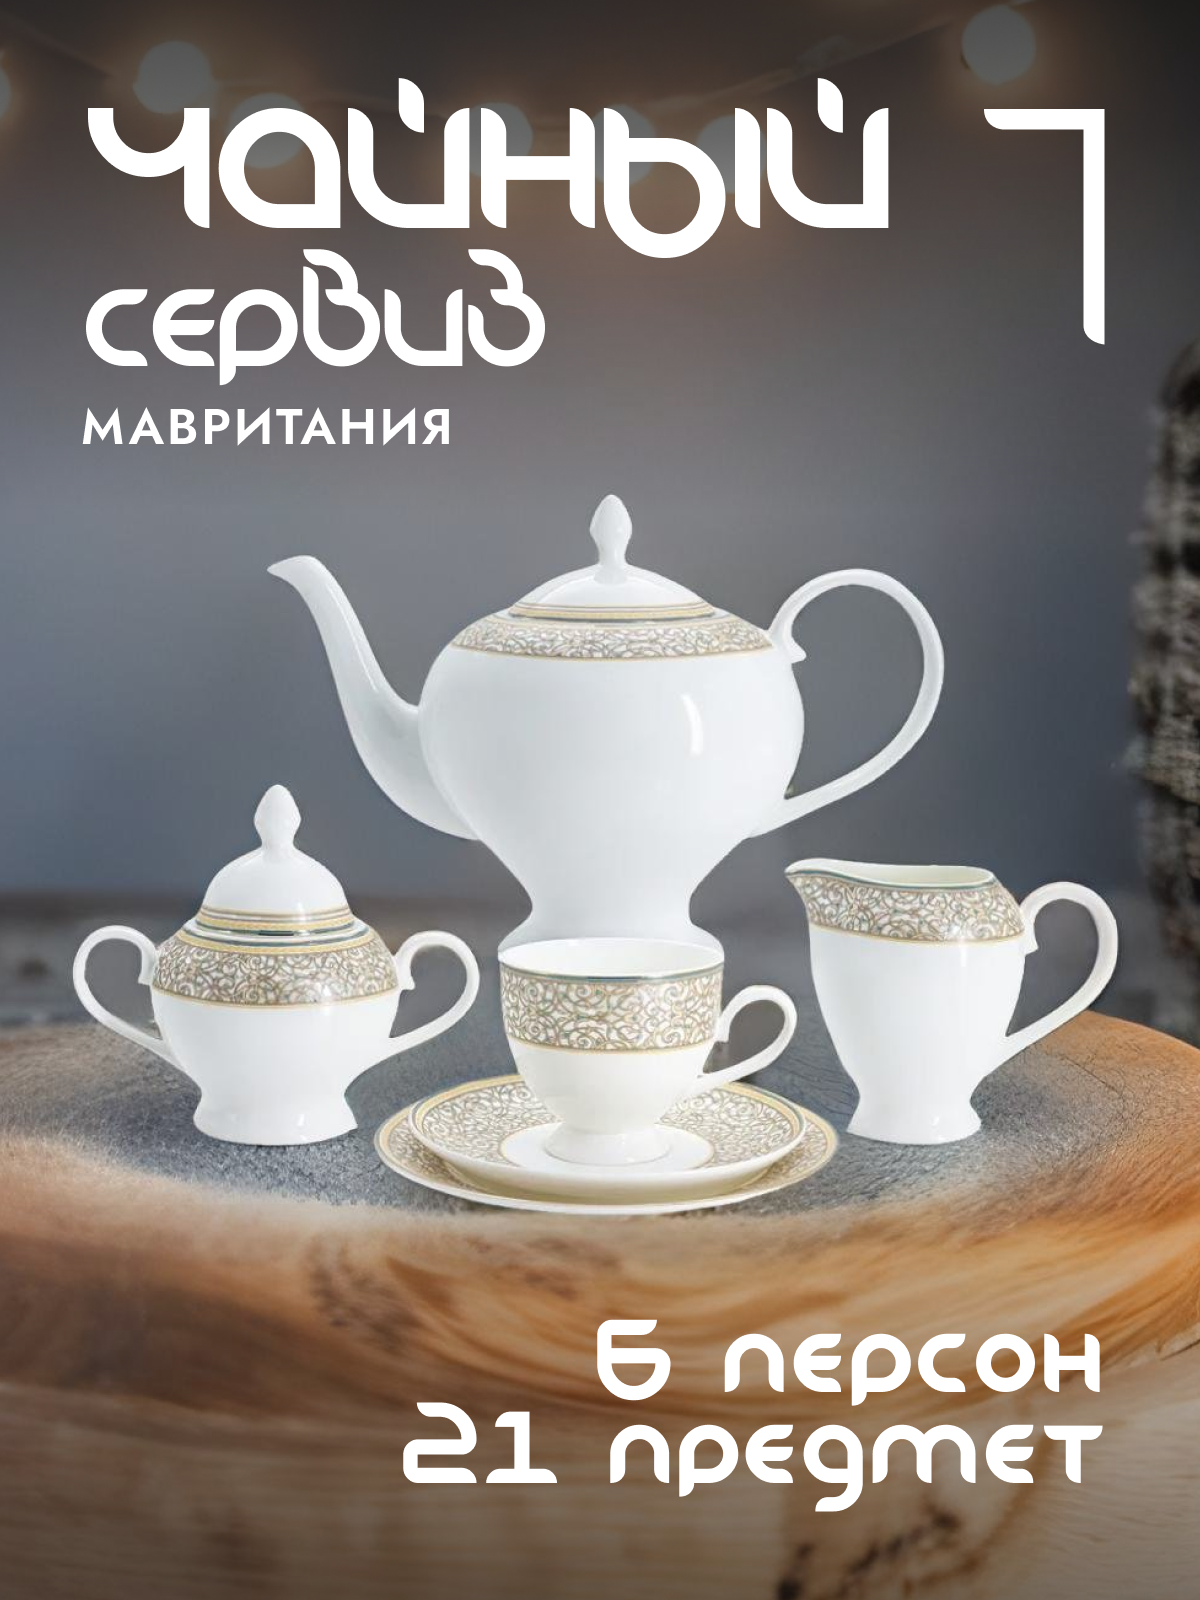 Чайный сервиз Anna Lafarg Emily Мавритания фарфоровый на 6 персон AL-16-89-21-E5